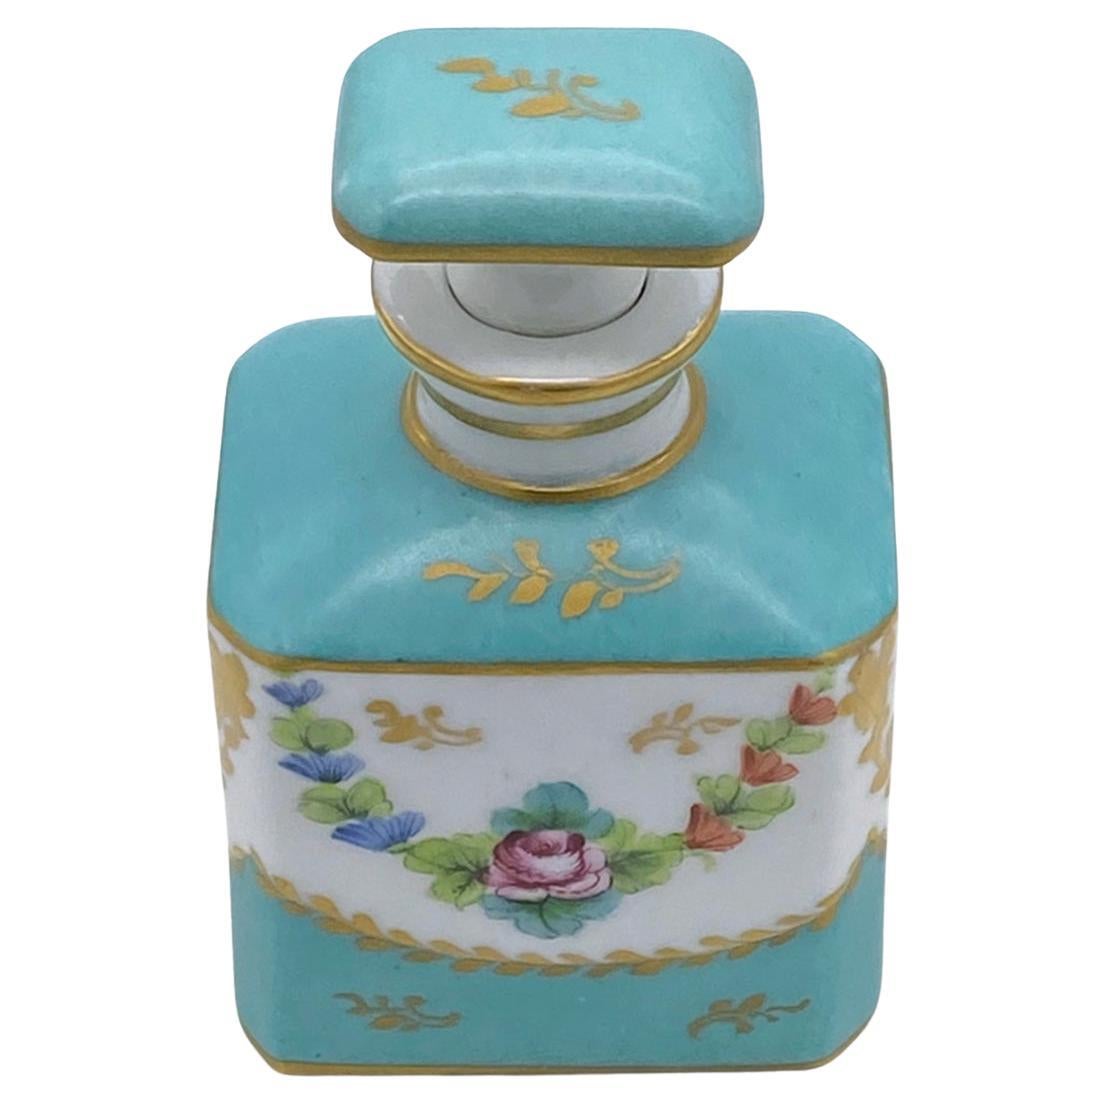 Il s'agit d'un flacon de parfum avec bouchon décoré à la main à Limoges. Ce flacon bleu turquoise sur fond blanc avec des traits dorés est également décoré de roses avec des guirlandes au recto et au verso. Cette bouteille en porcelaine de style